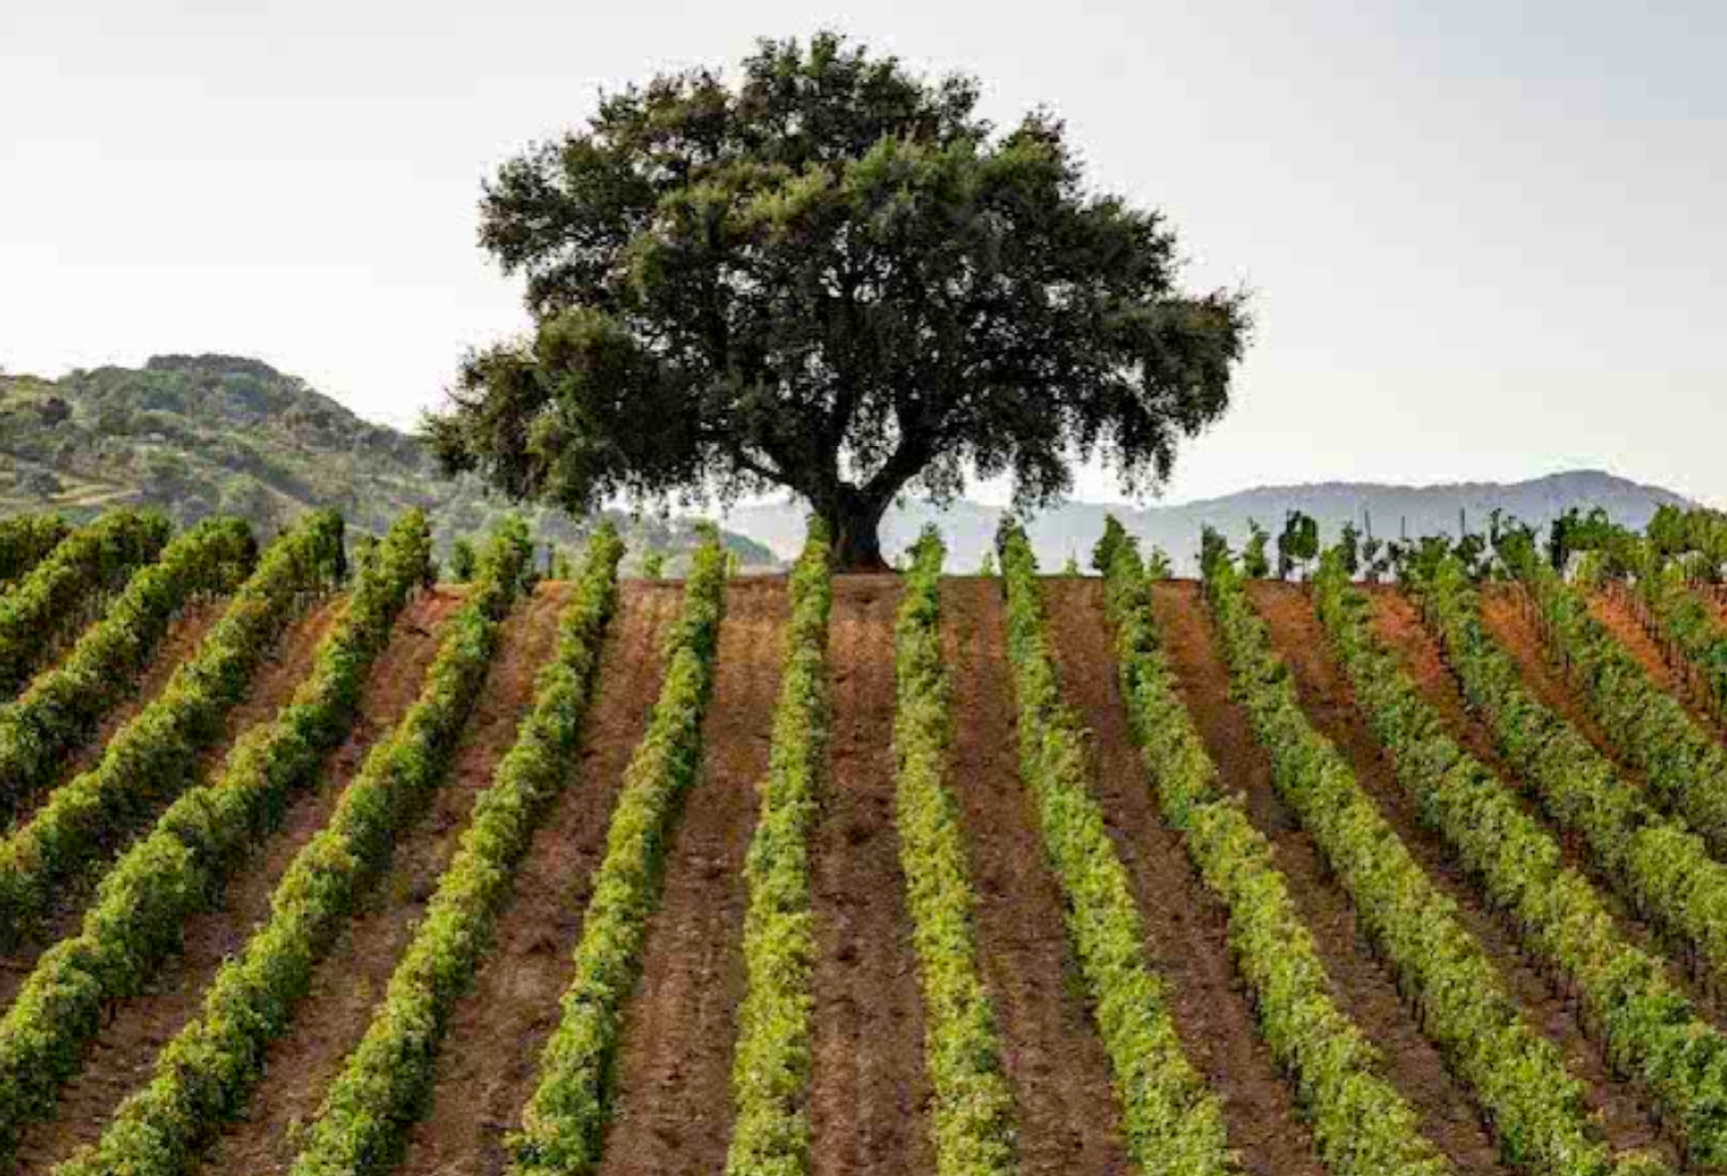 Sicilia, il “continente vitivinicolo” con l’incanto delle isole nell’isola